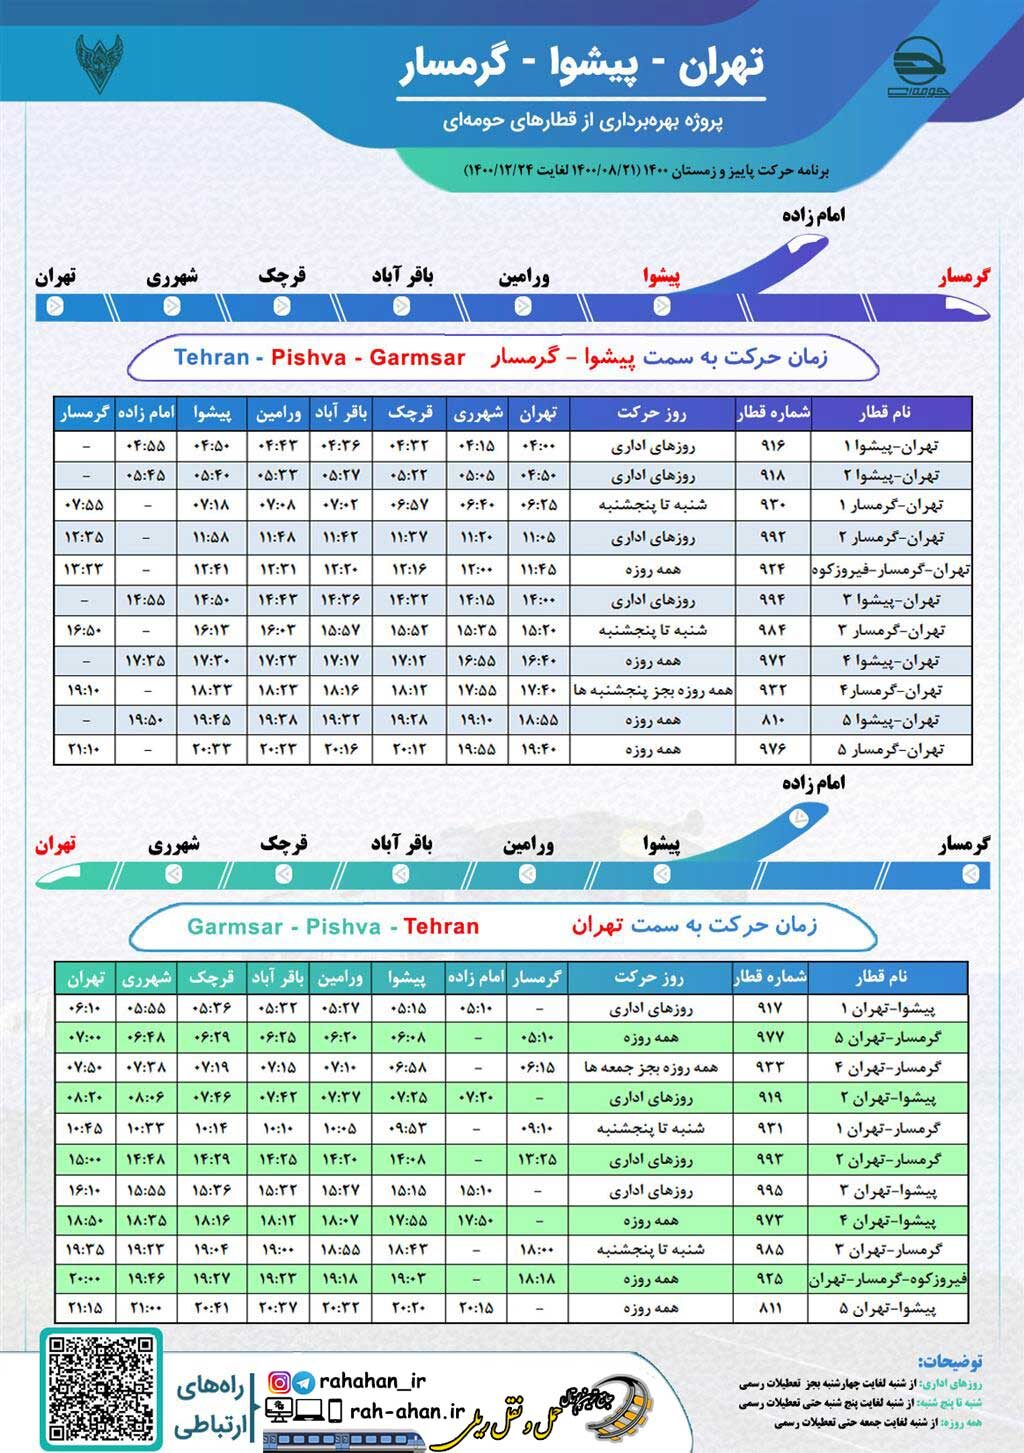 برنامه حرکت قطارهای حومه ای تهران-پیشوا-گرمسار/پاییز و زمستان 1400